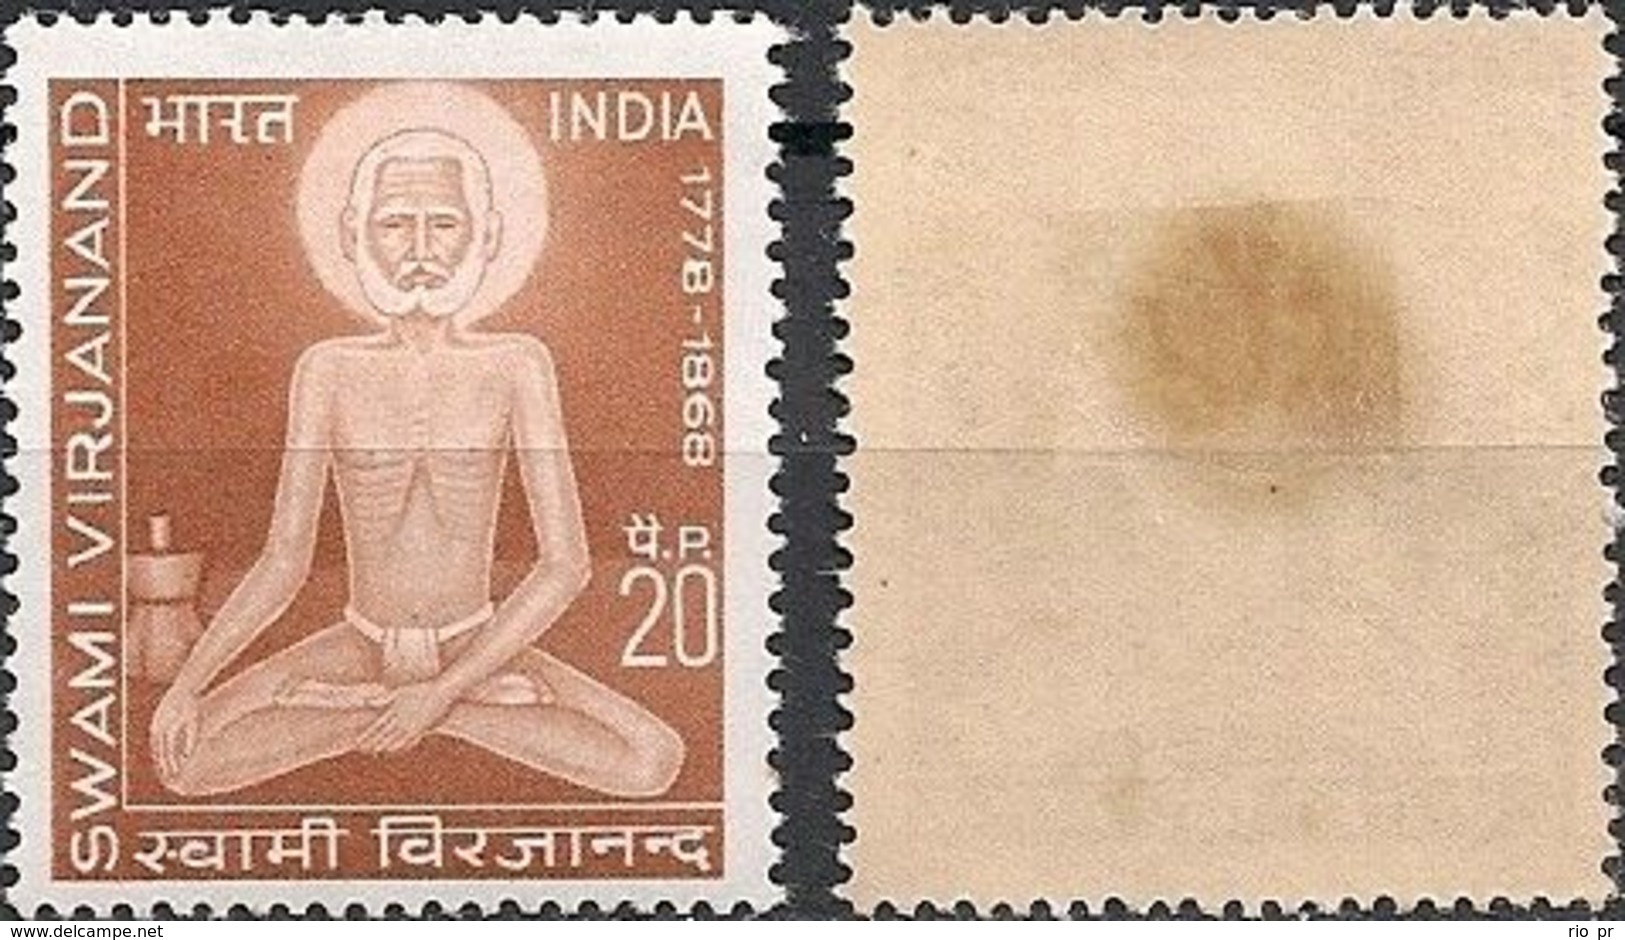 INDIA - VIRJANAND (1778-1868), SCHOLAR AND SAGE 1971 - MH - Ungebraucht